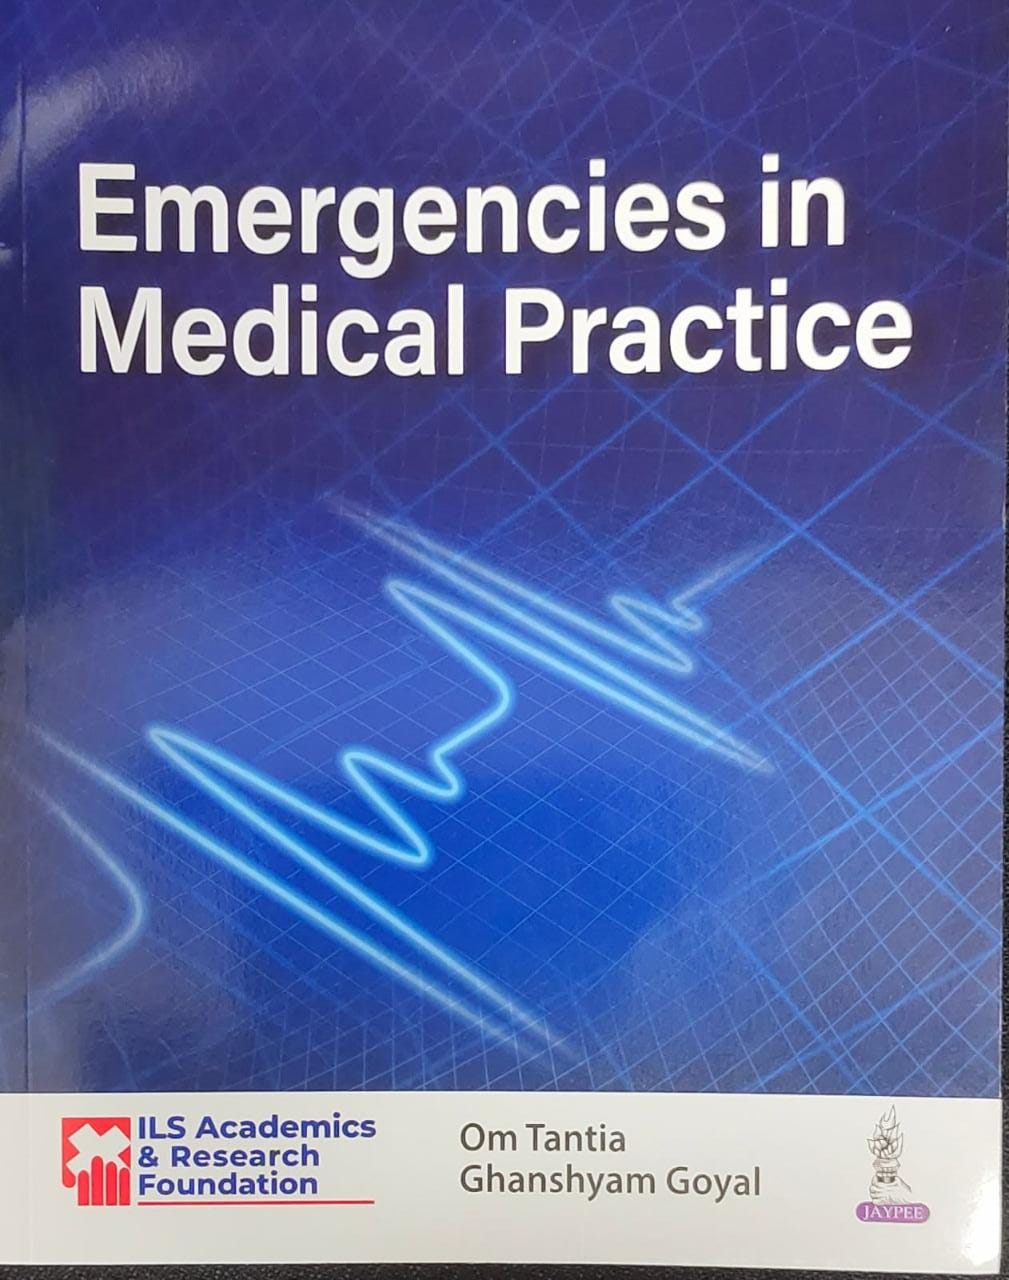 Emergencies in Medical Practice by Om Tantia